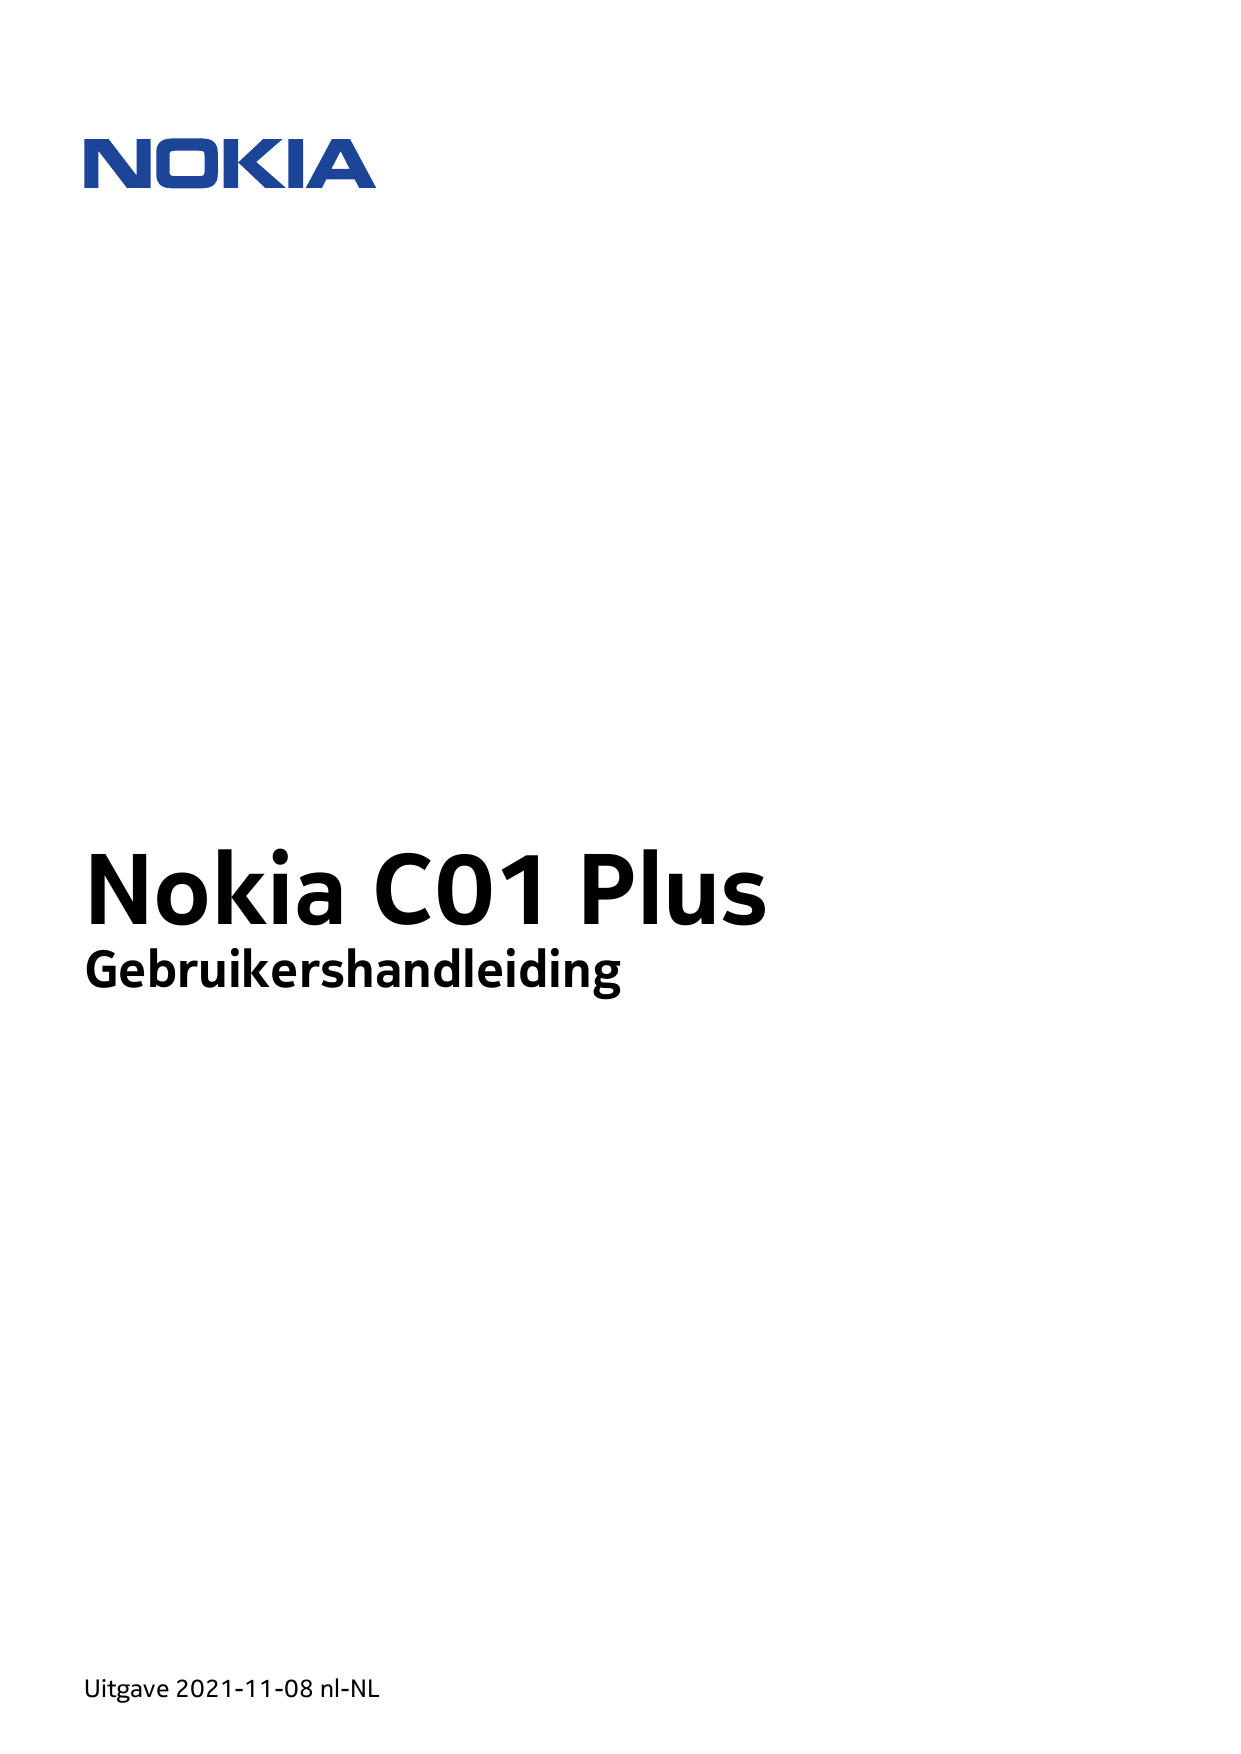 Nokia C01 PlusGebruikershandleidingUitgave 2021-11-08 nl-NL